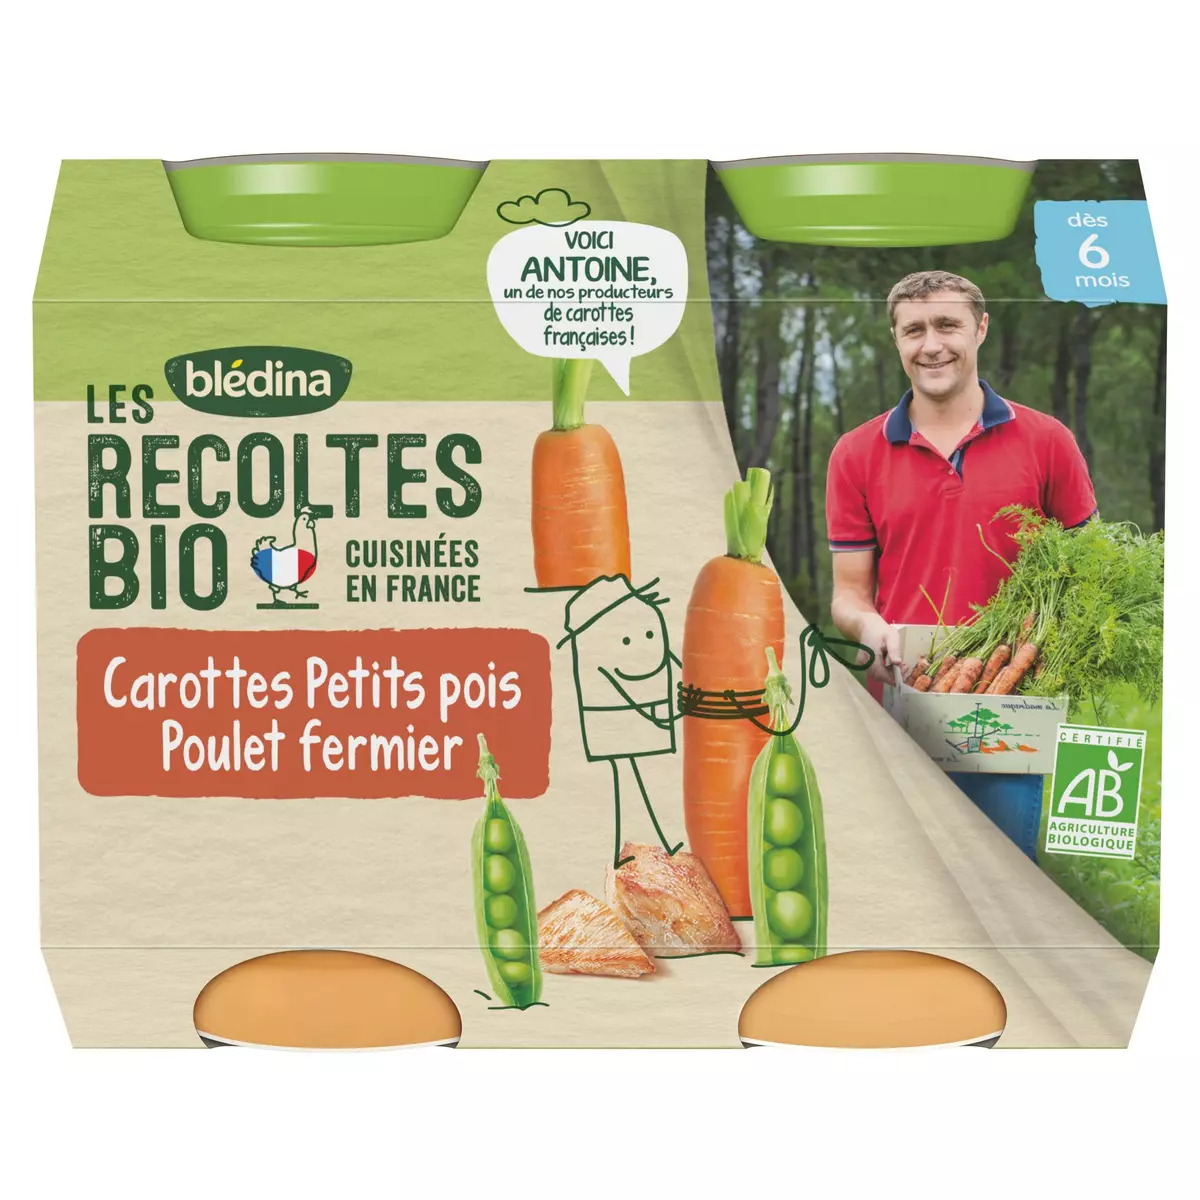 BLEDINA Les récoltes bio petit pot carotte petits pois poulet fermier bio dès 6 mois 2x200g